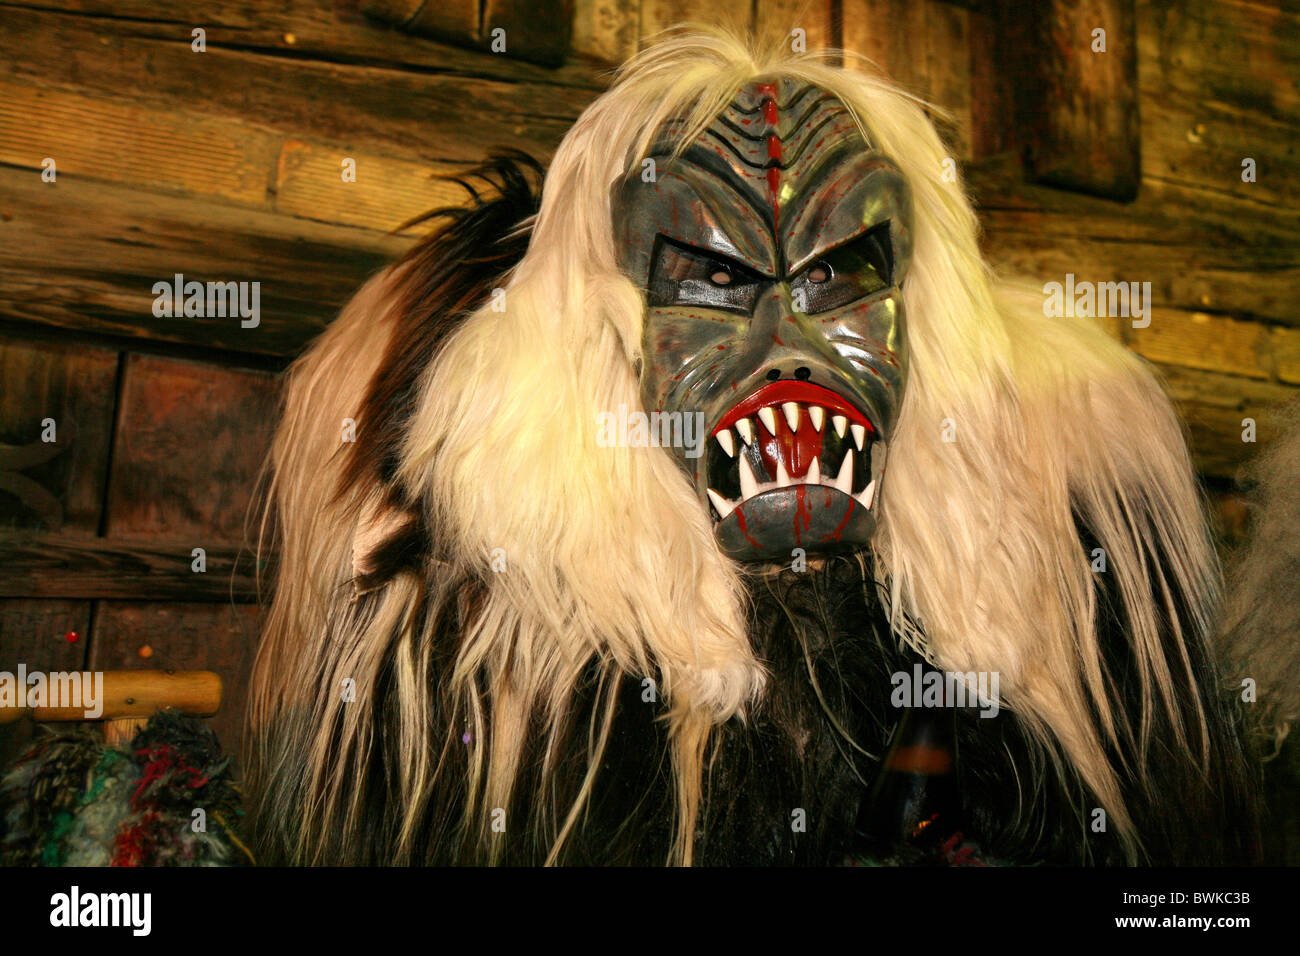 Traje de máscara personalizada personalizada nacional disfrazar Fancy Dress Carnival Carnival Roitschaggata Roit máscaras de madera Foto de stock